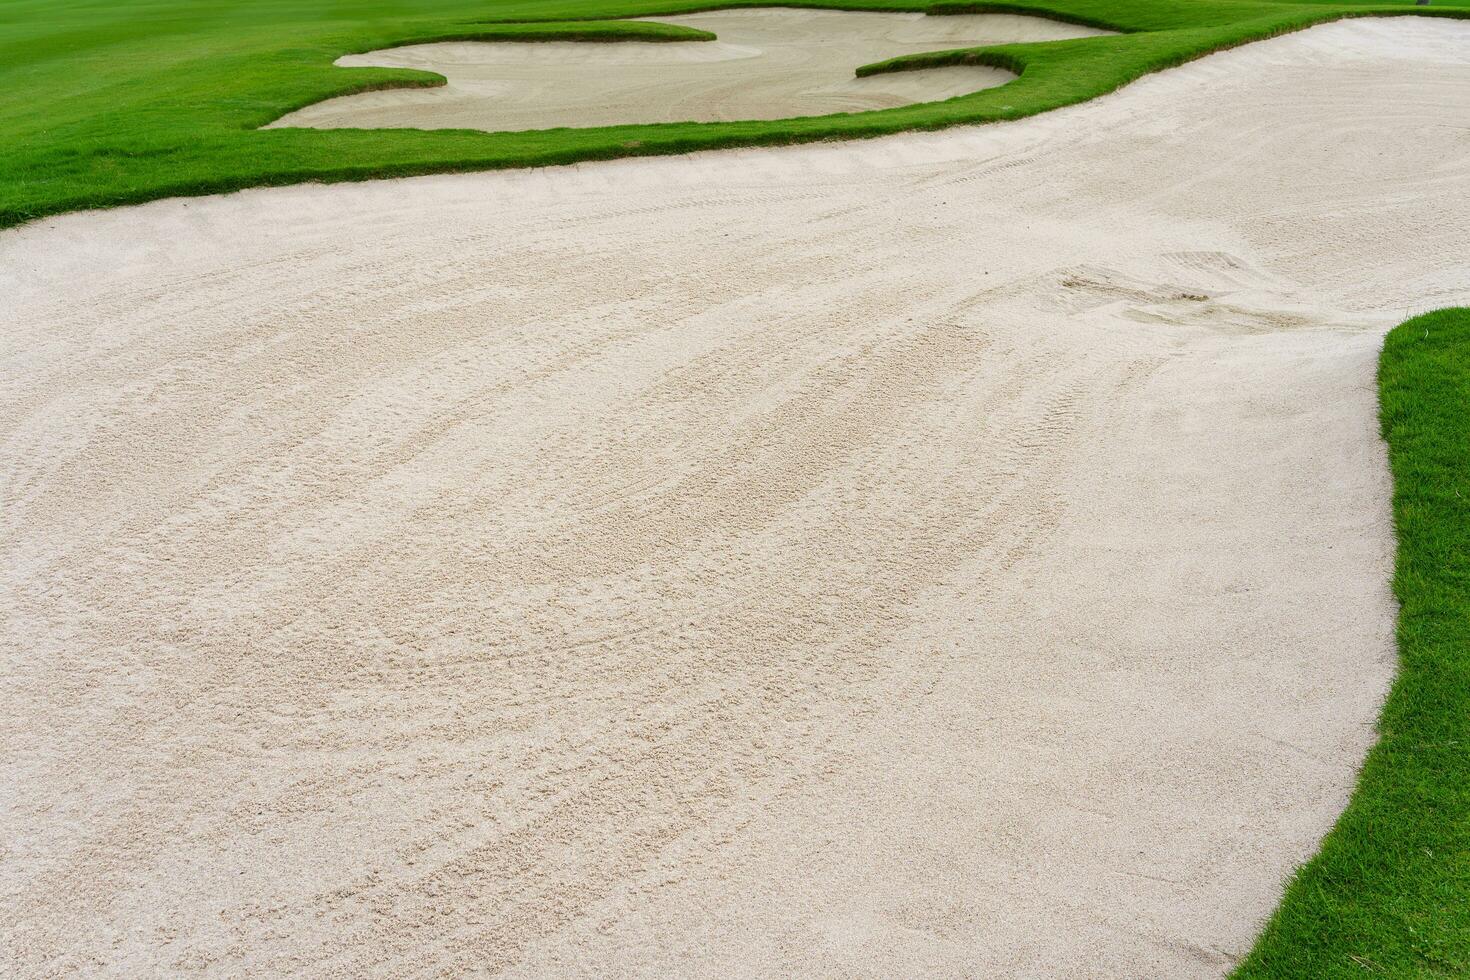 le golf cours le sable fosse bunker esthétique arrière-plan,utilisé comme obstacles pour le golf compétitions pour difficulté et chute de le cours pour beauté photo